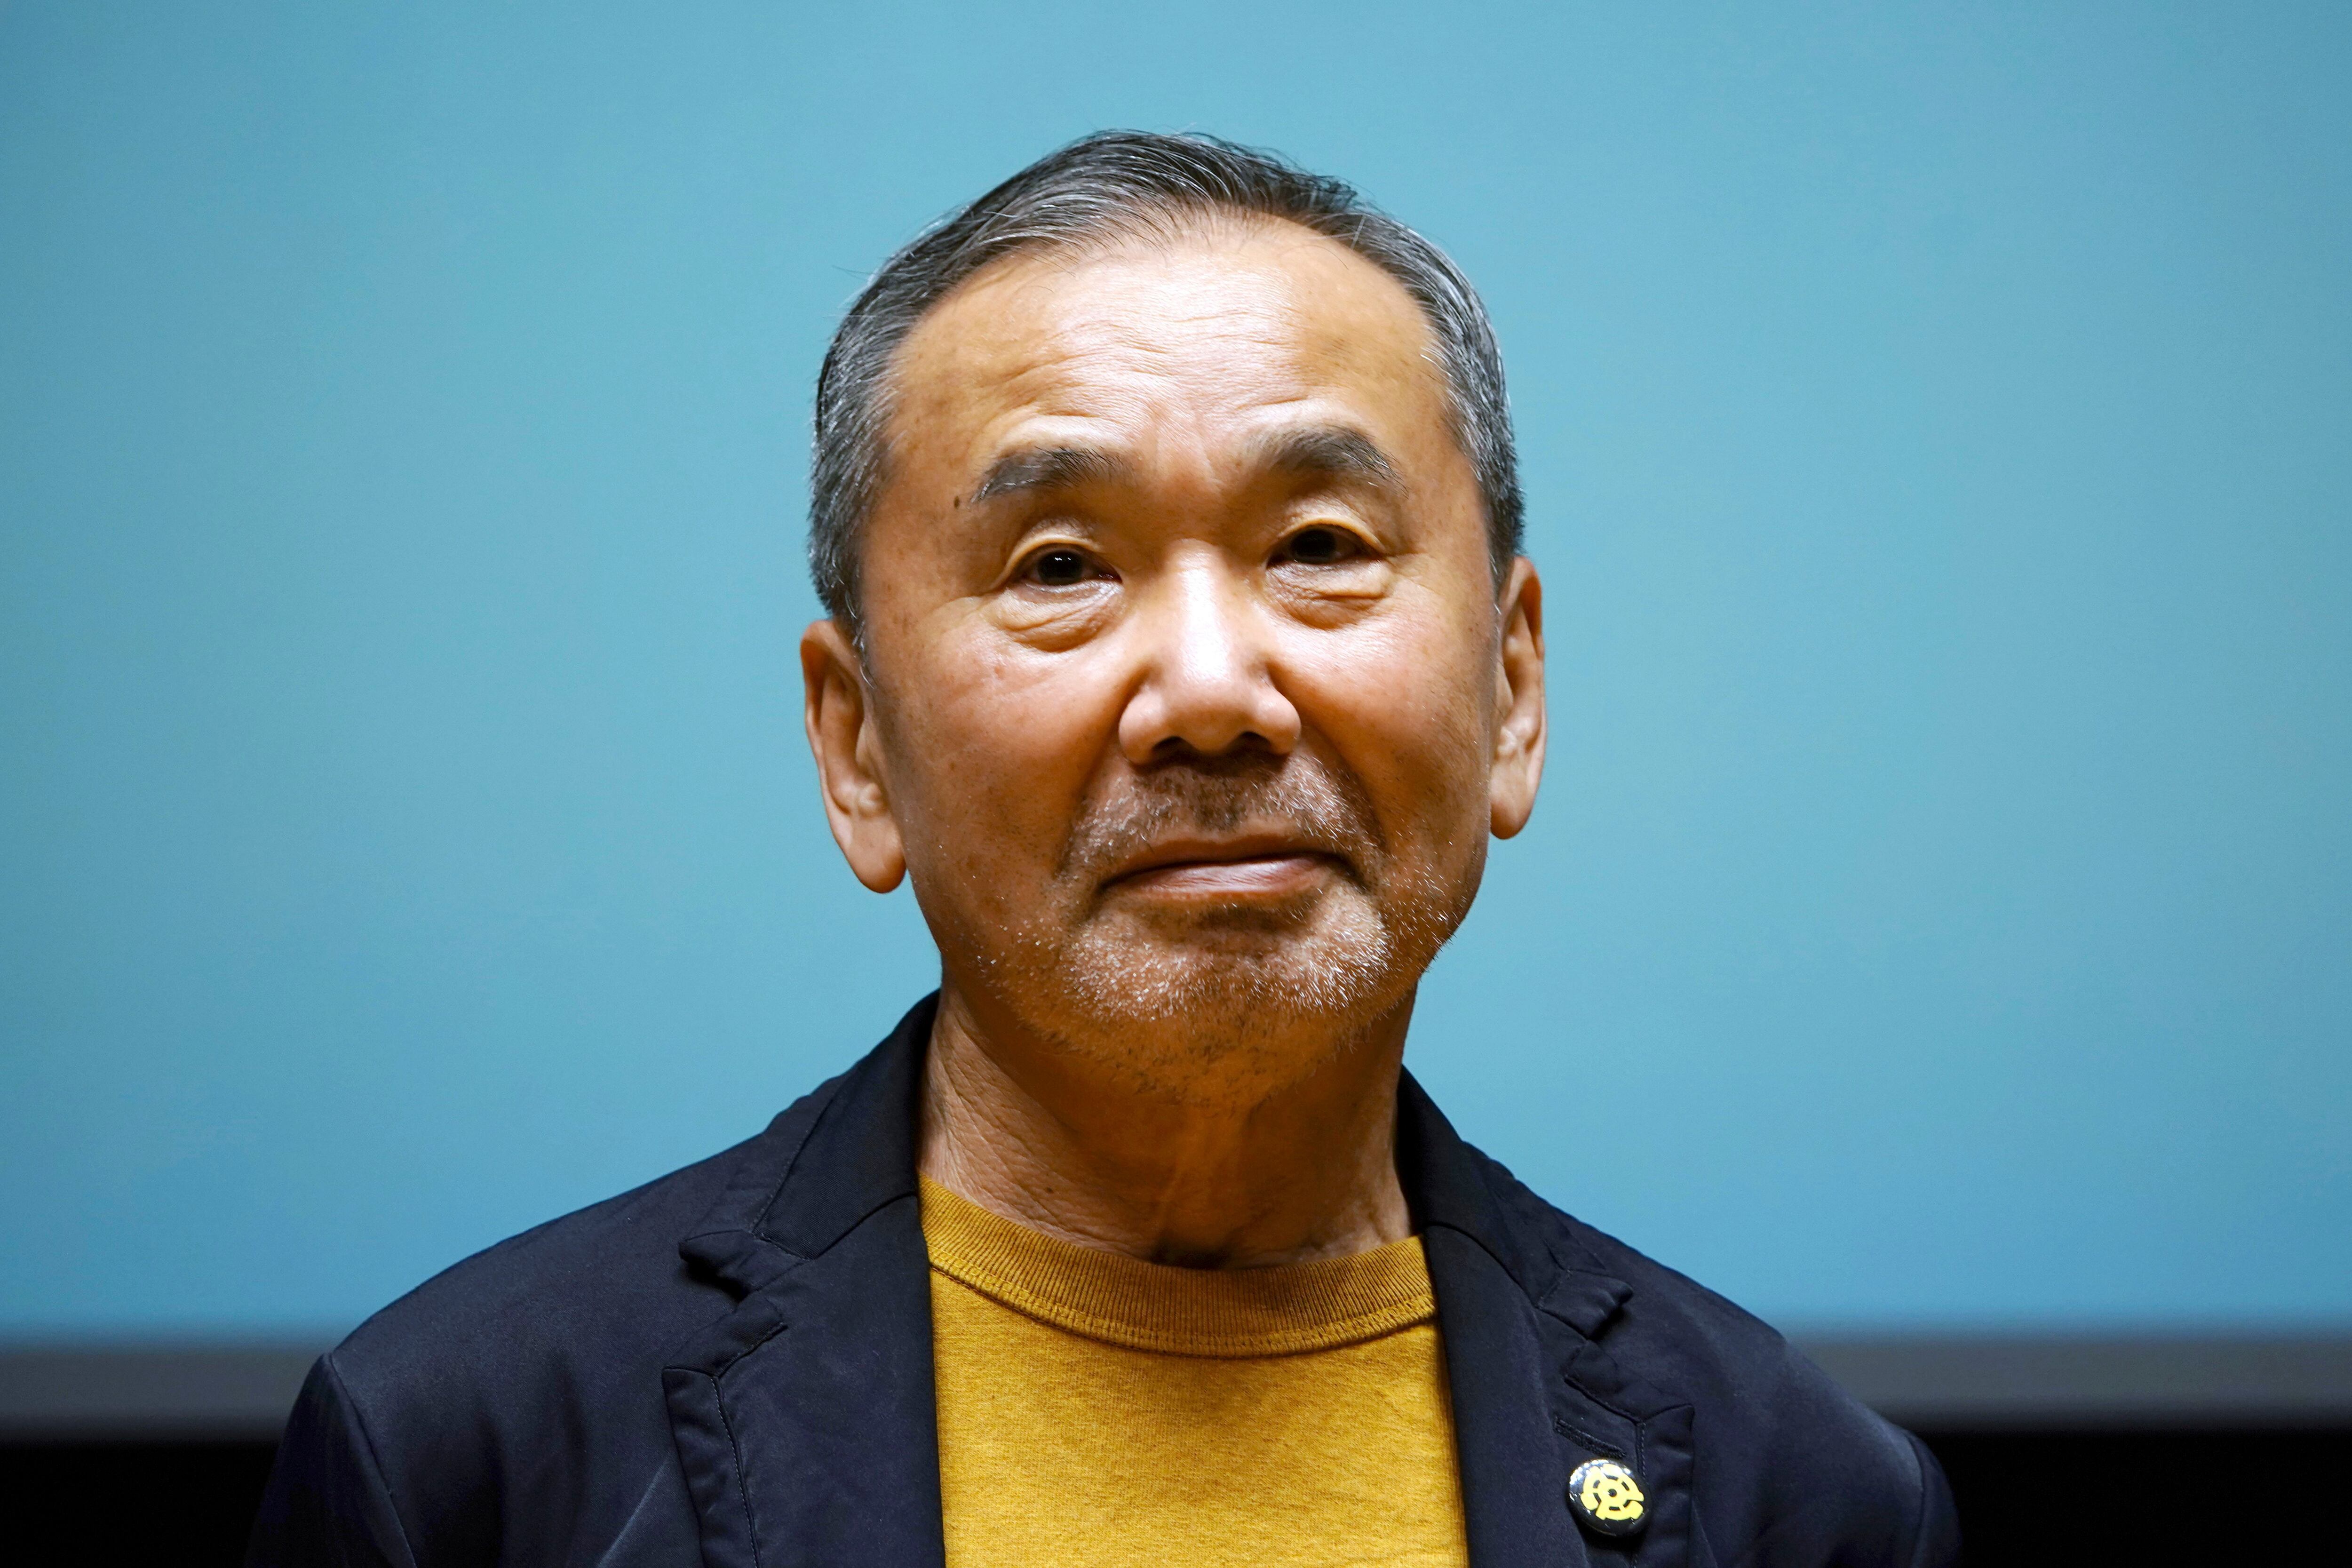 Por estos días, el novelista japonés Haruki Murakami vuelve a sonar como candidato al Premio Nobel de Literatura (Foto AP/Eugene Hoshiko,archivo)